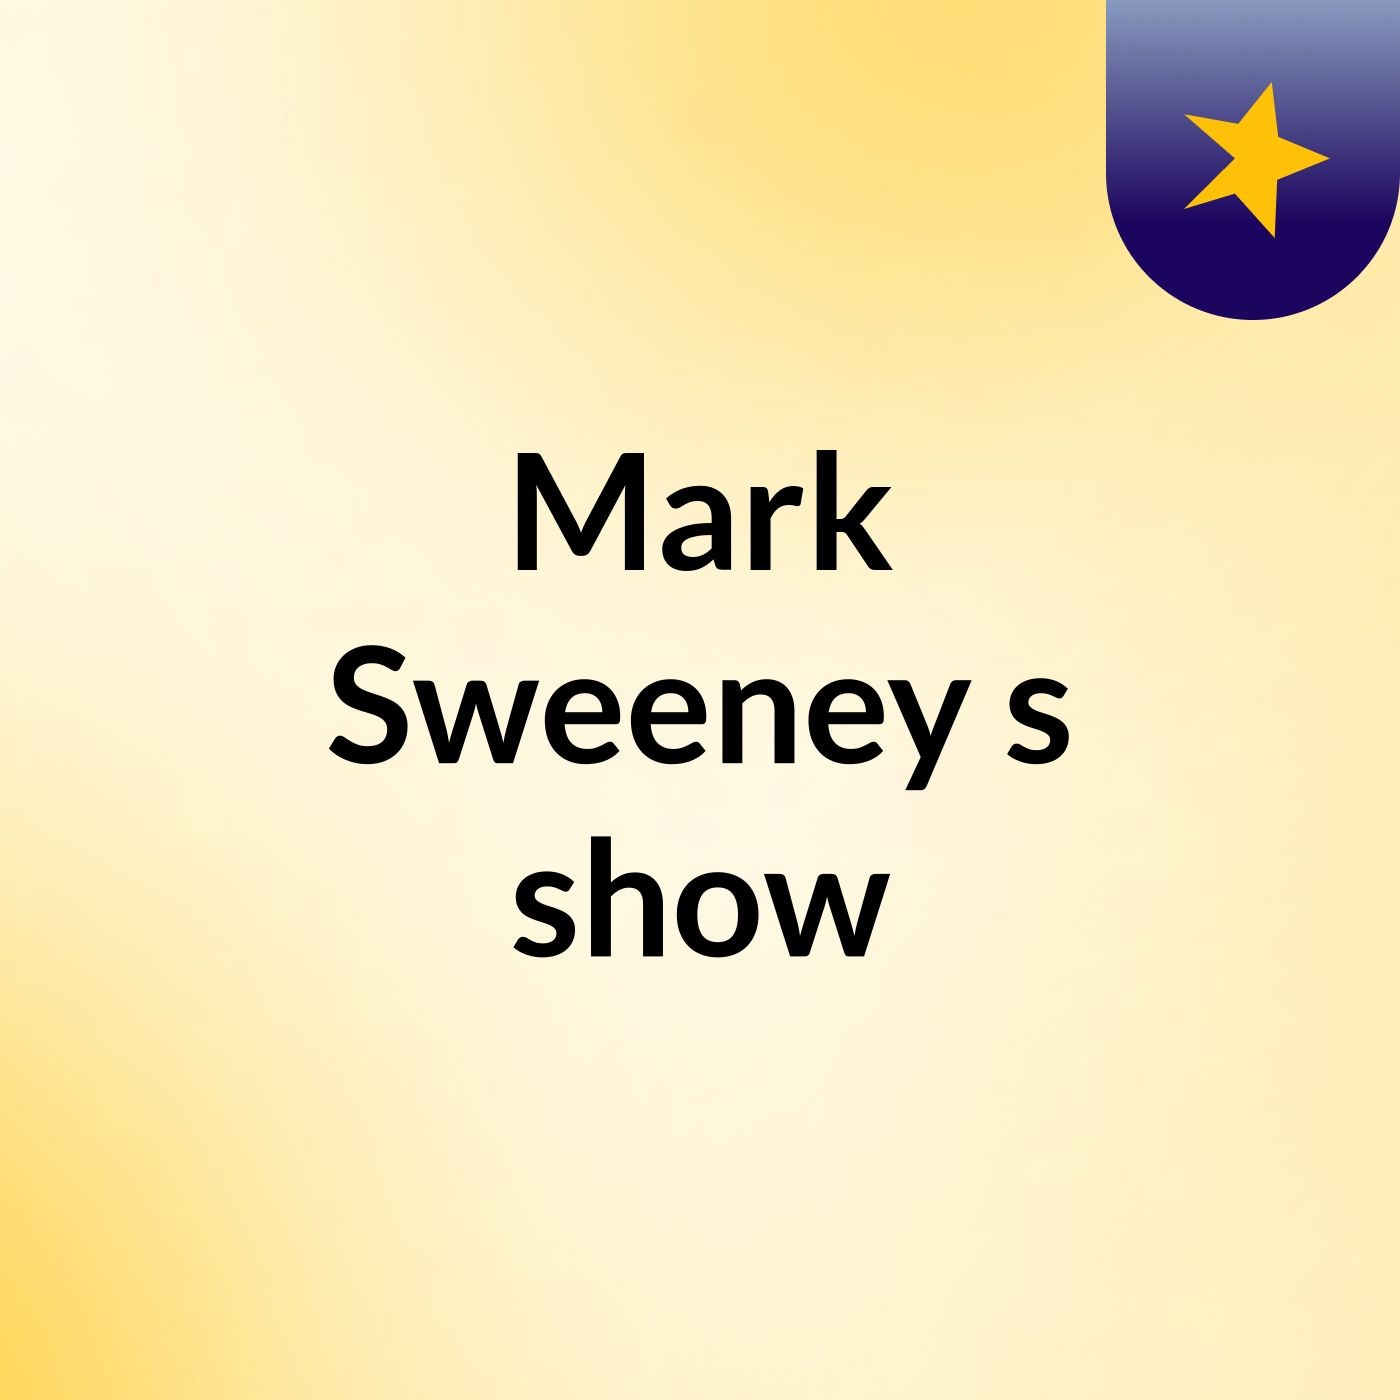 Episode 1 - Mark Sweeney's show